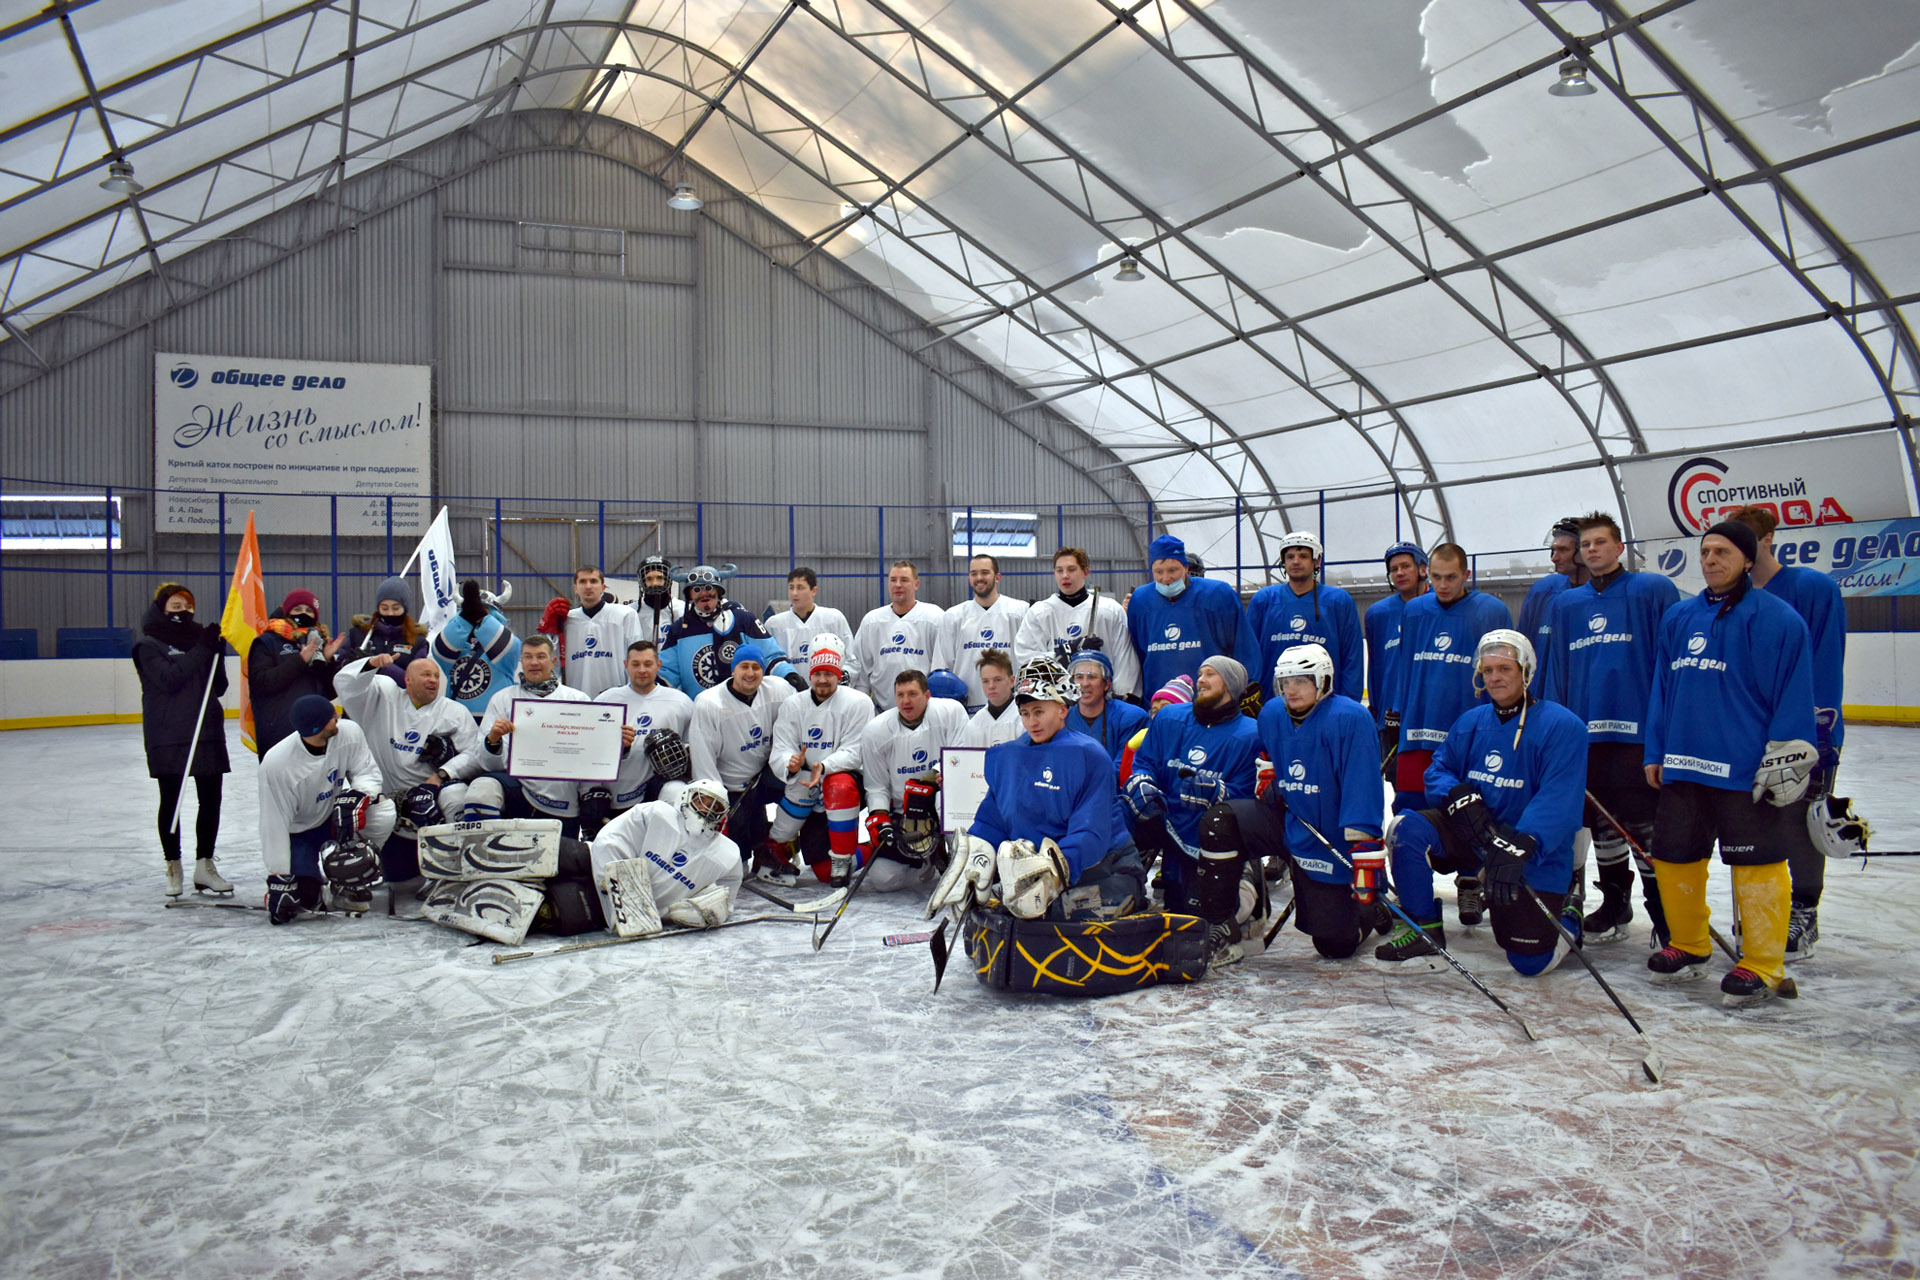 День волонтера и День хоккея встретили горячим льдом